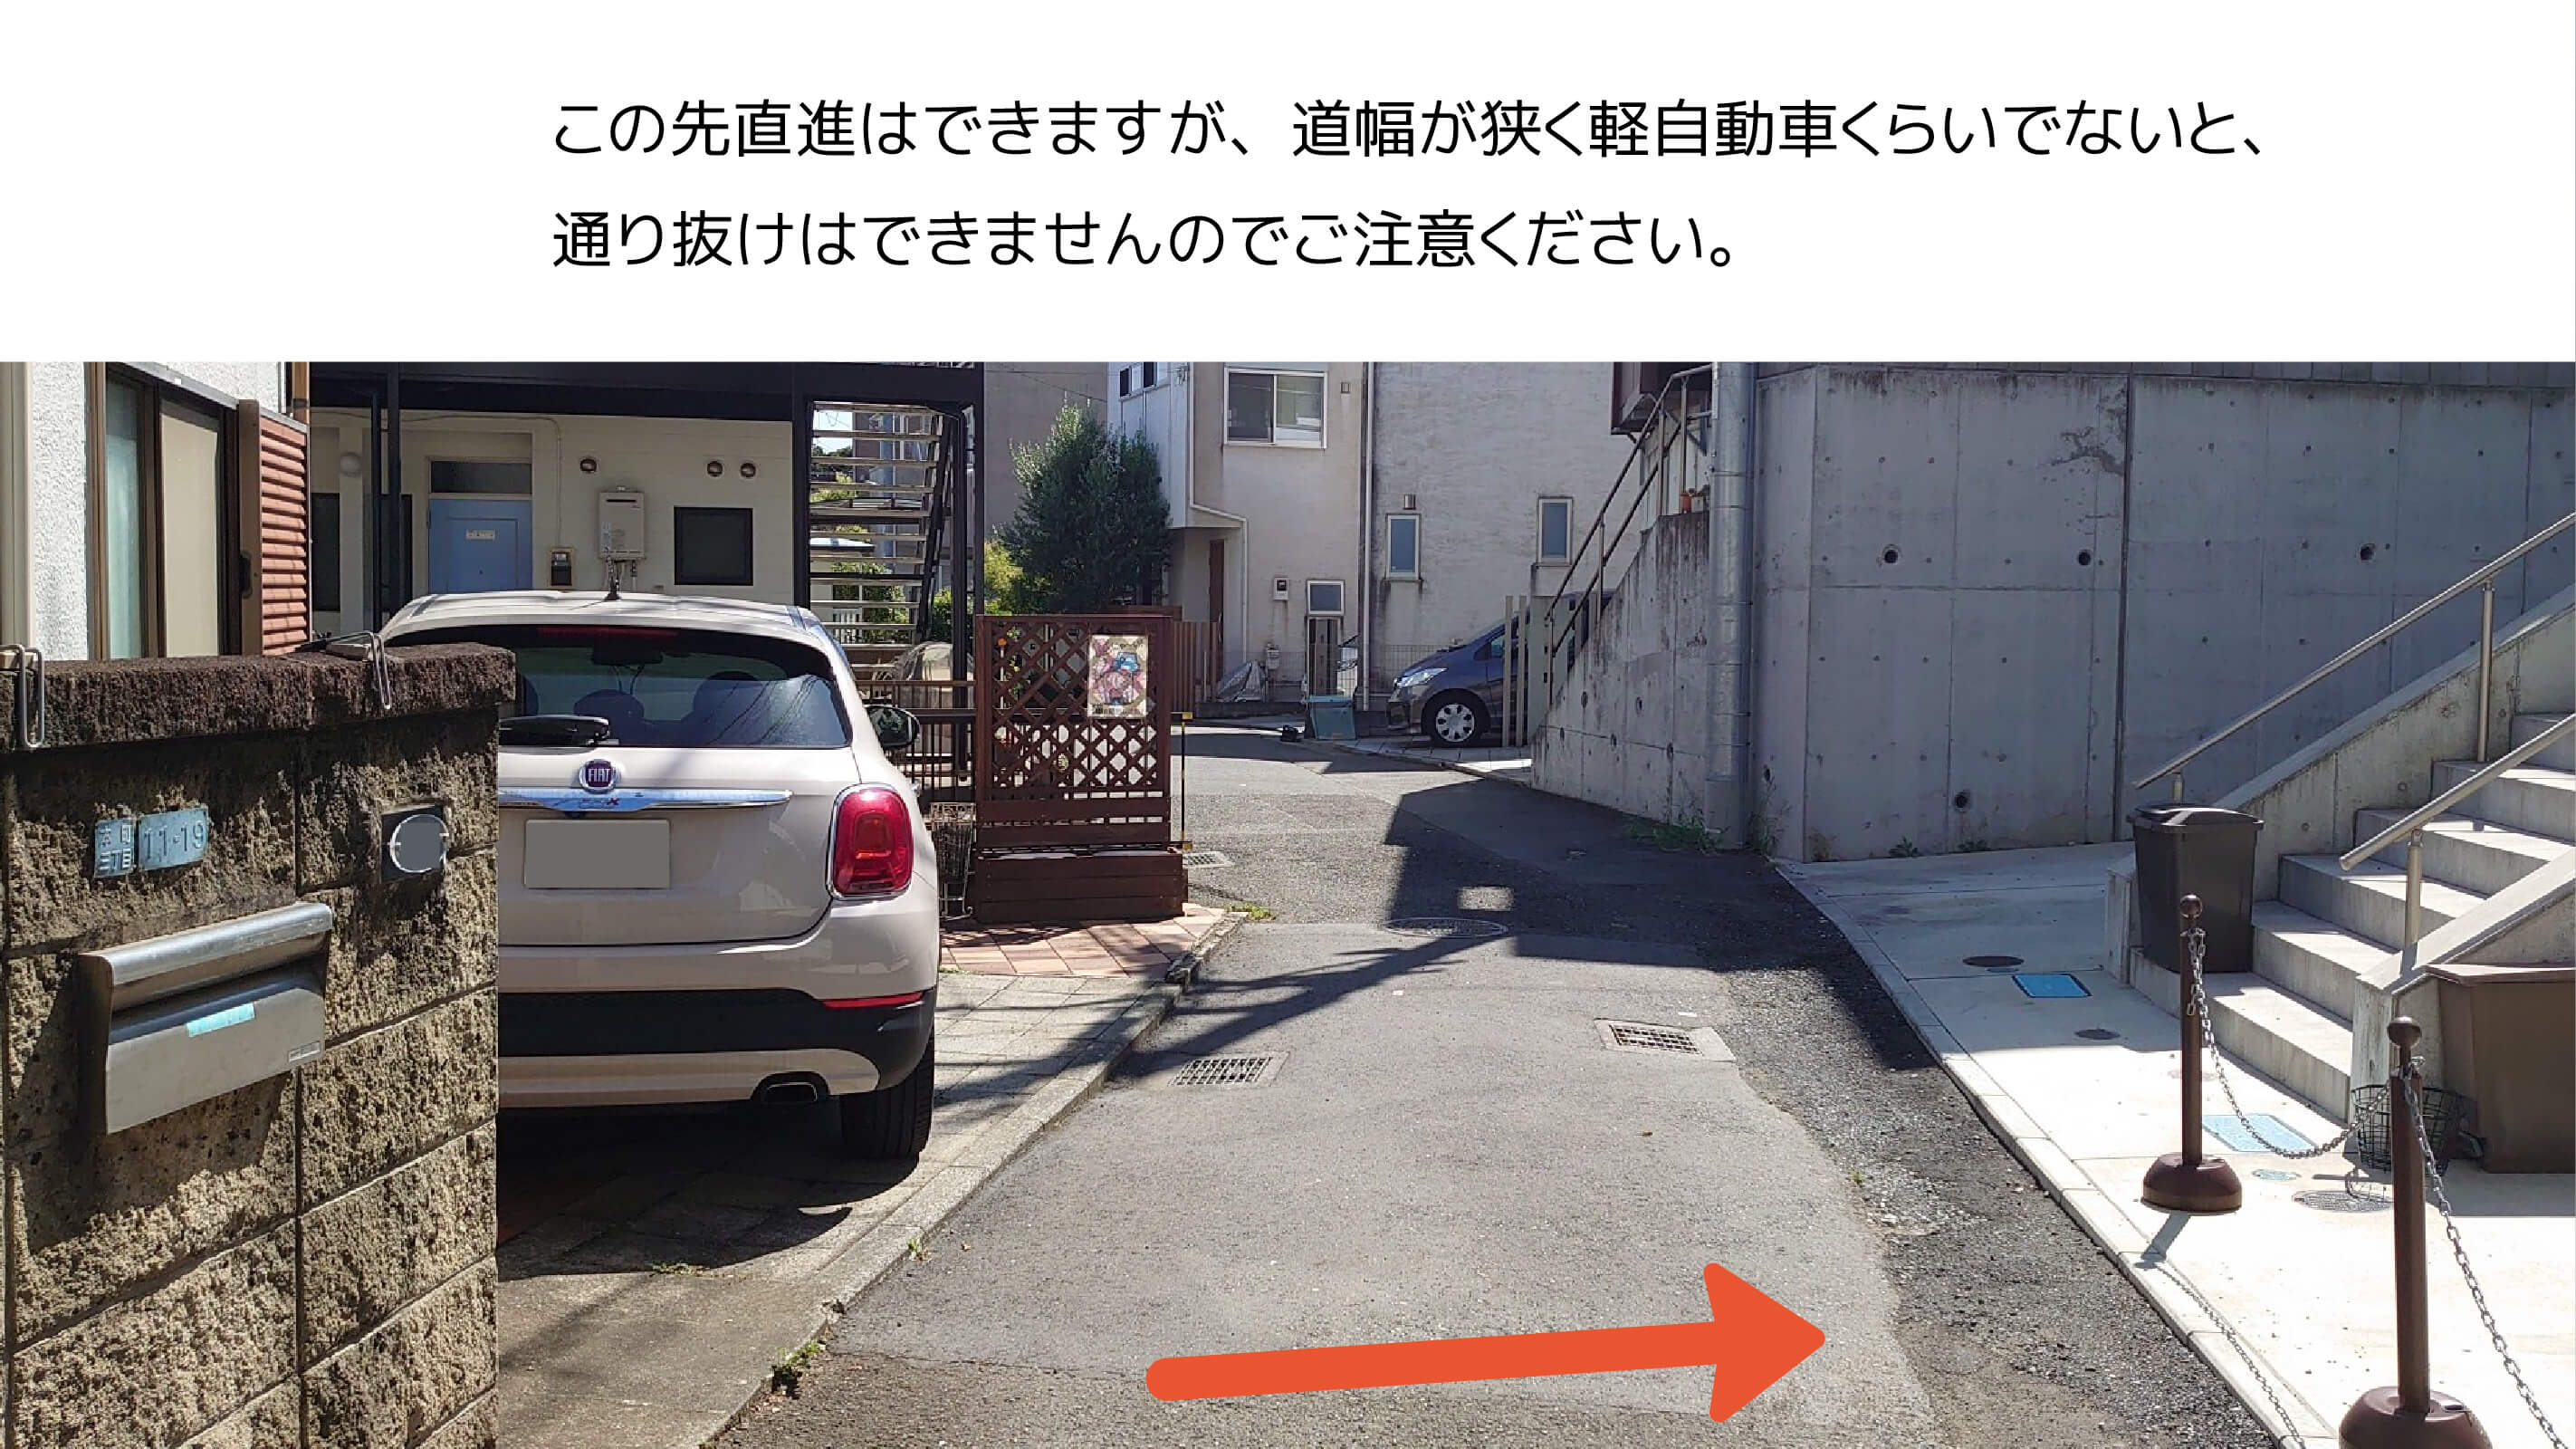 ≪軽・コンパクトカー≫本町3-12-4駐車場の写真